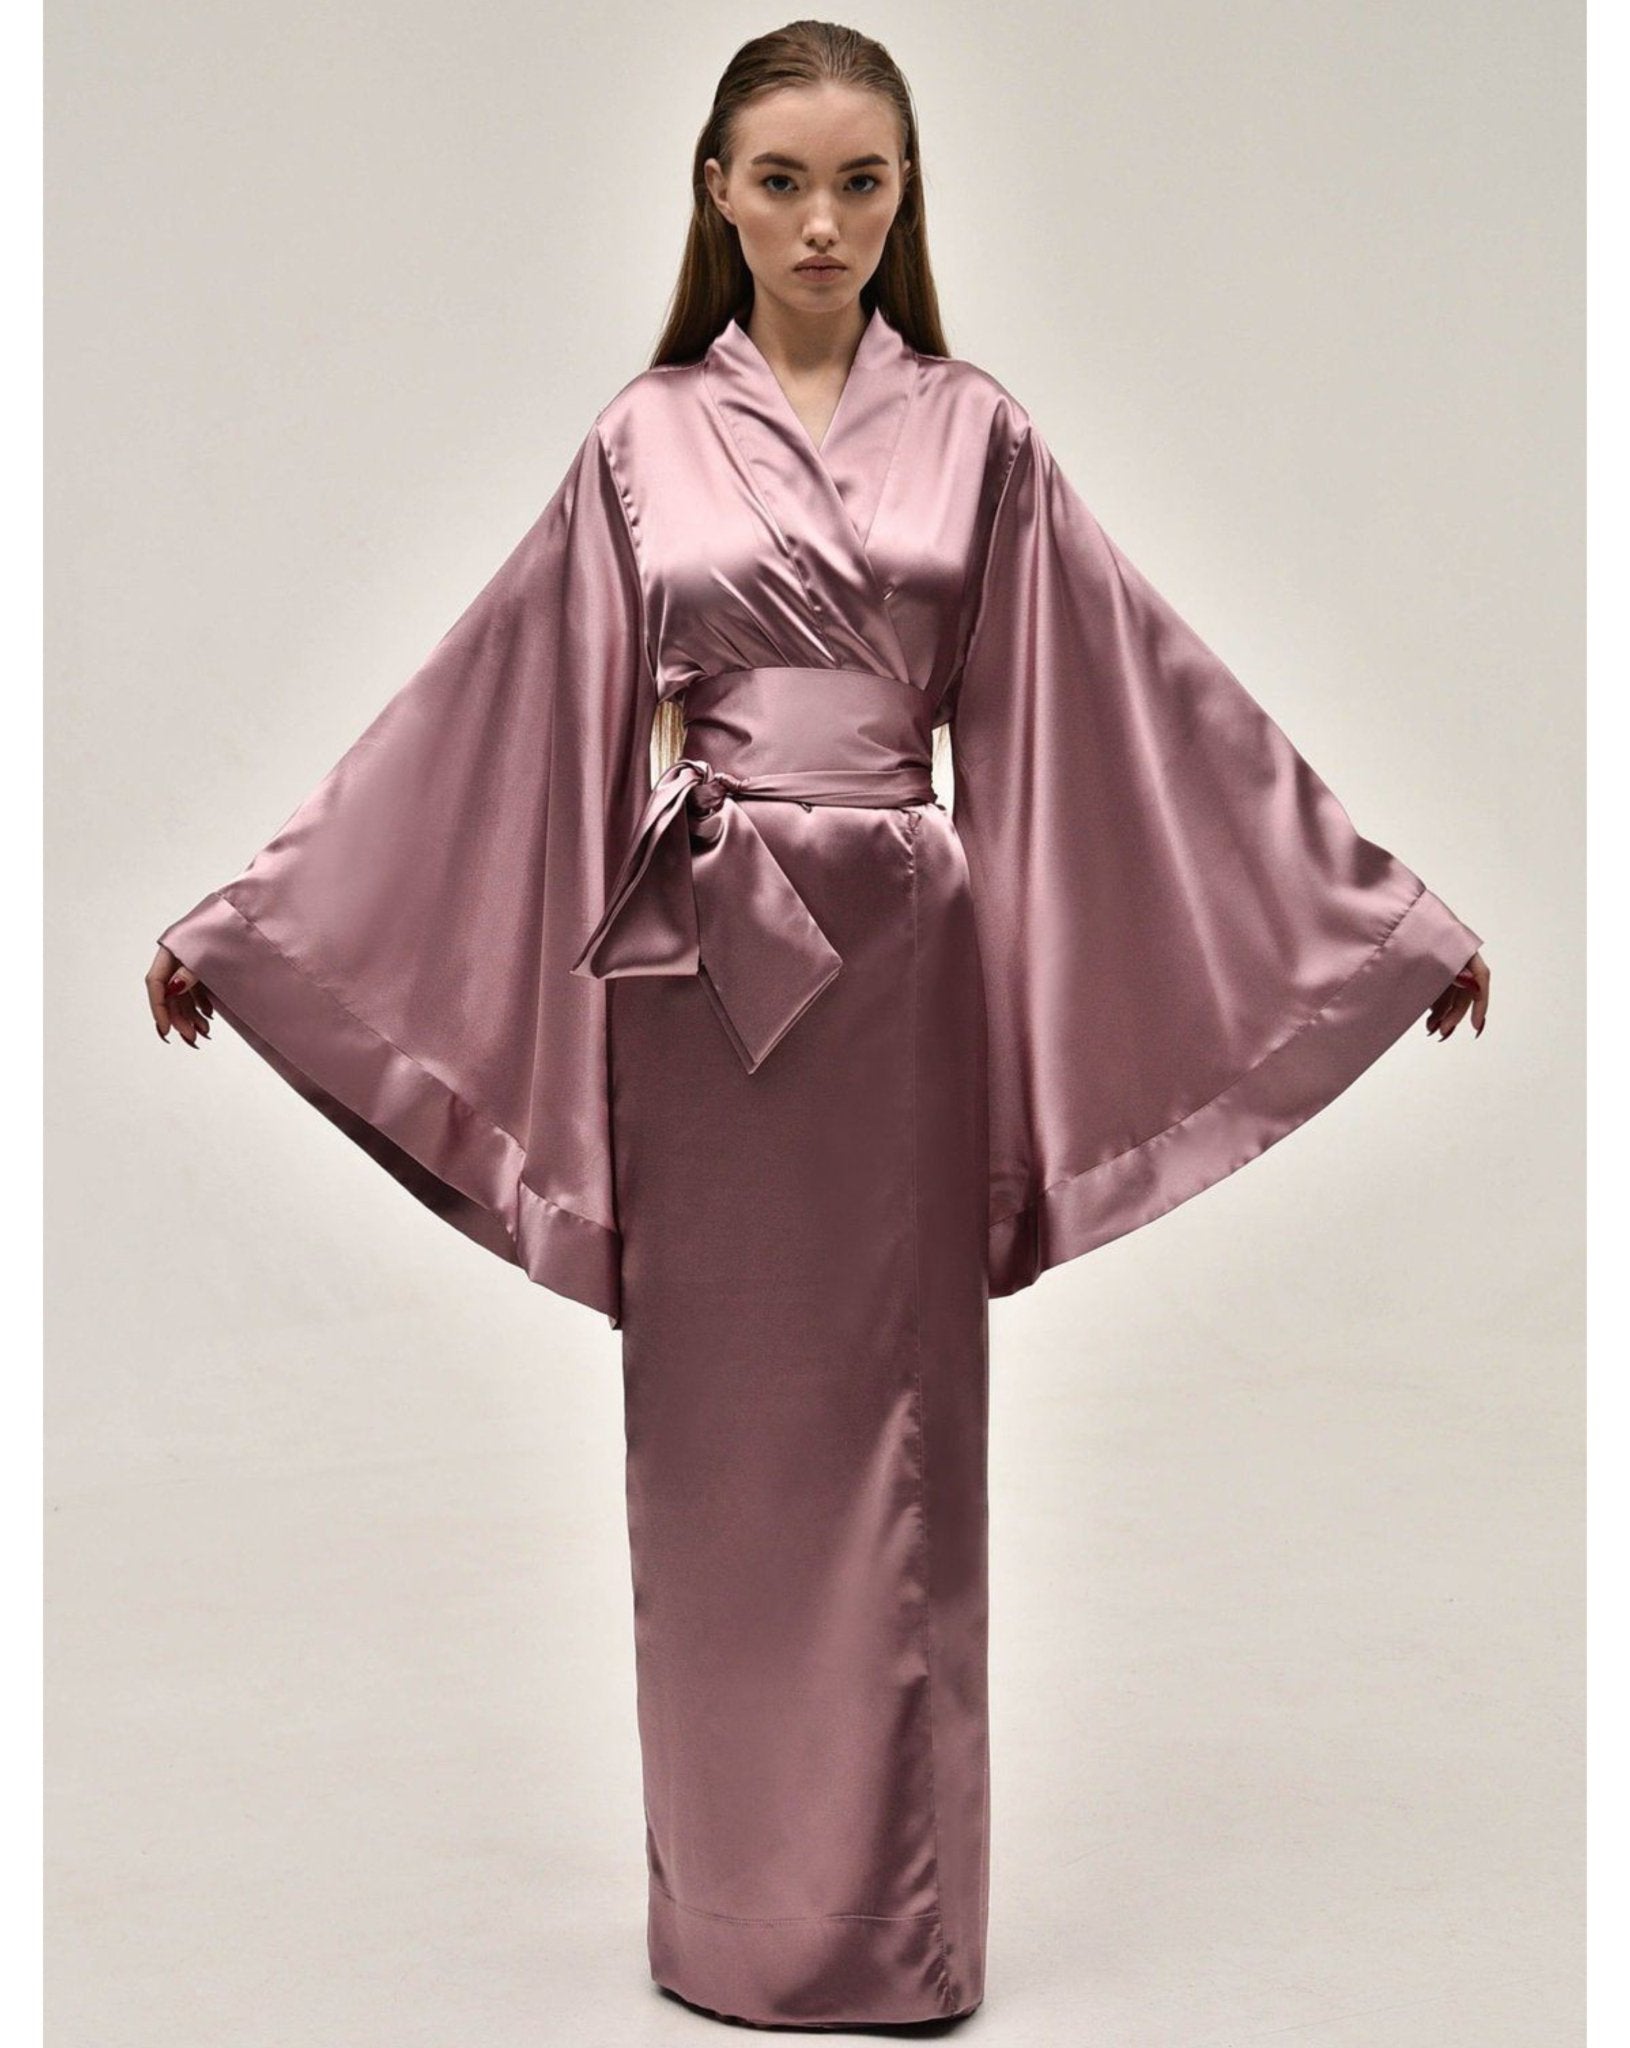 Long KÂfemme Satin Kimono – Robe|Luxury Robe|Silk Robes Kimono